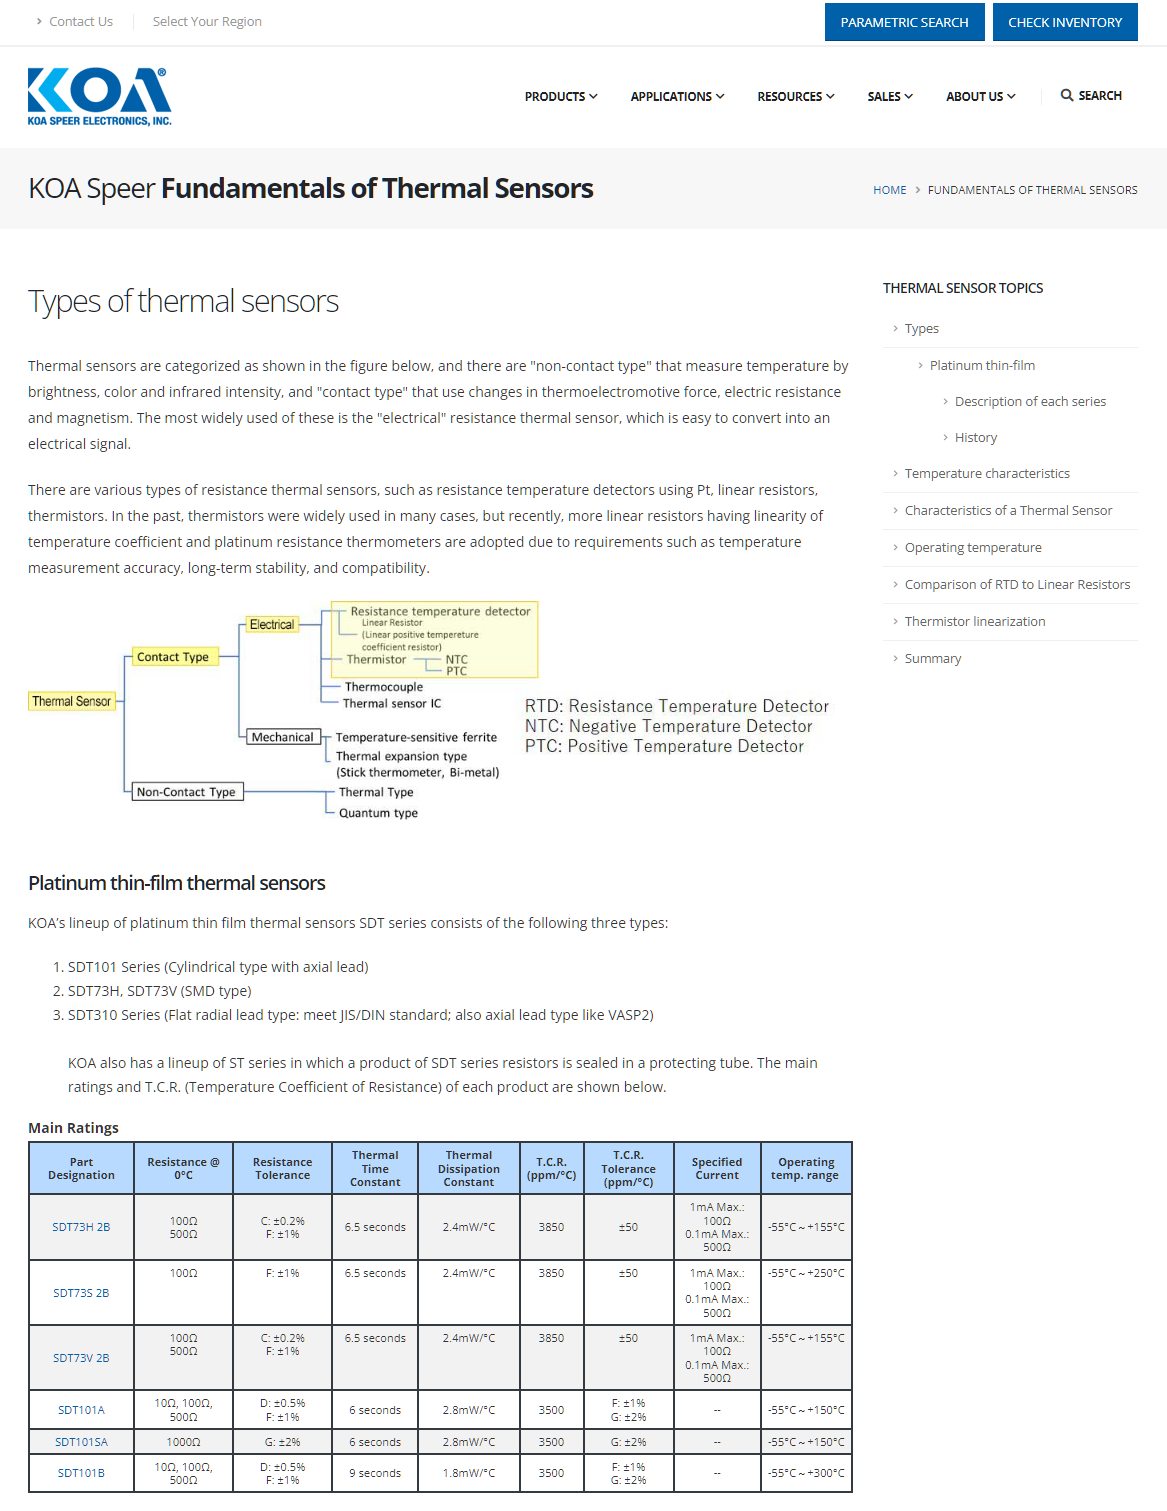 Fundamentals of Thermal Sensors